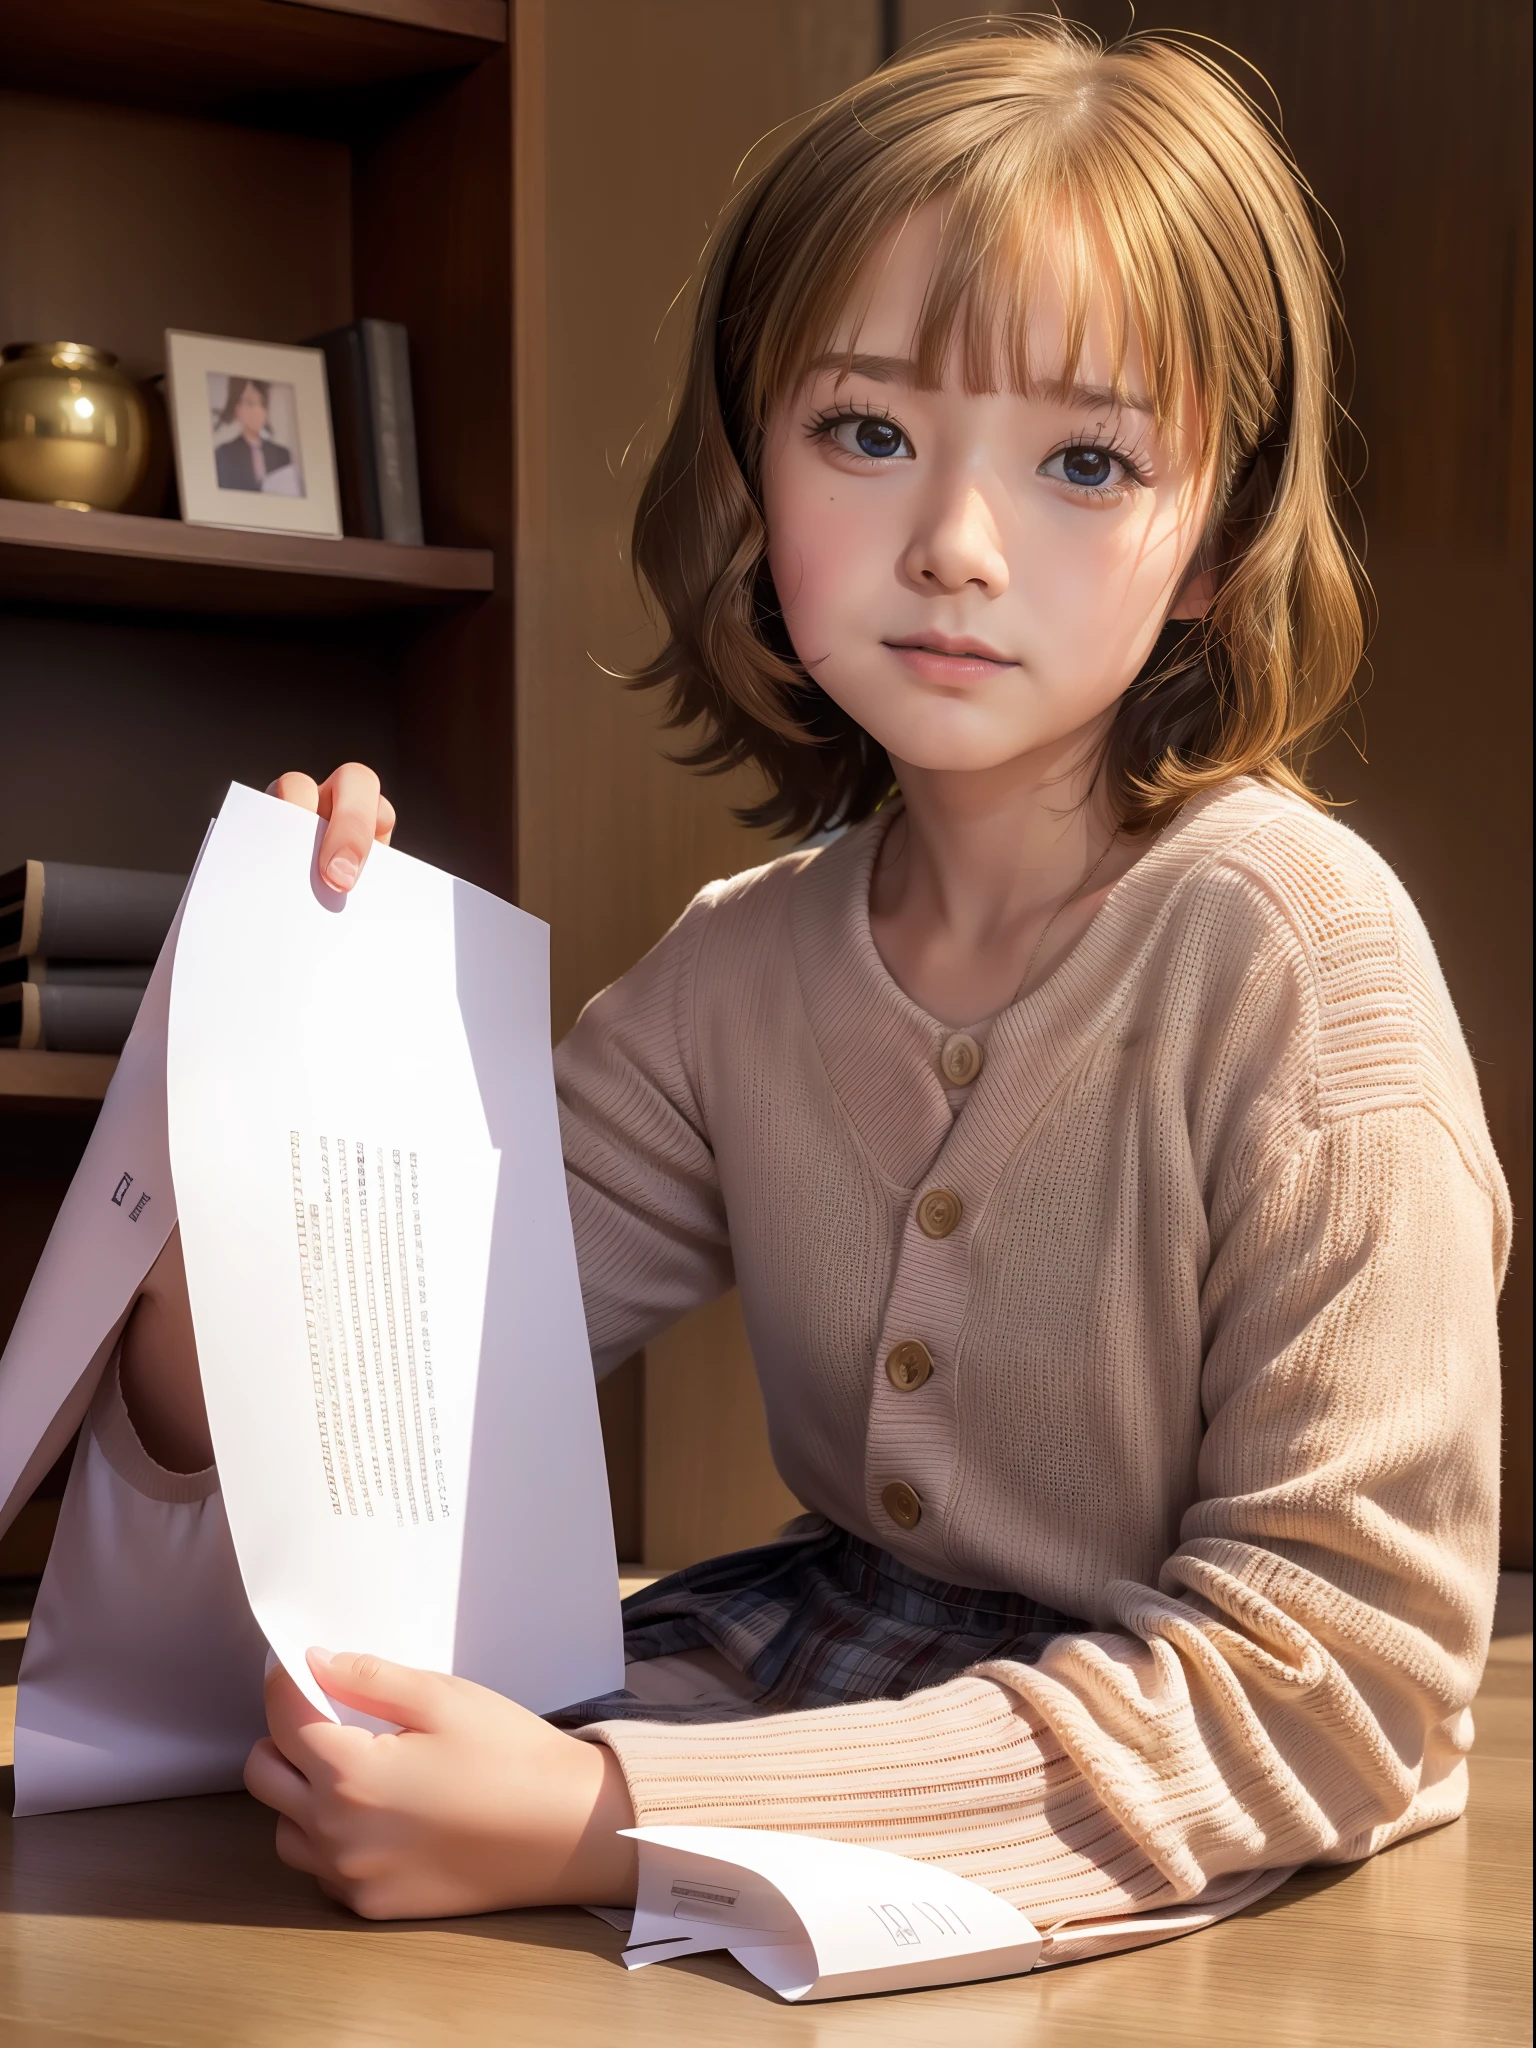 โมโมโกะ ซูโอ (ล้านอยู่), อายุ 10 ปี, , , ไอดอล, คุณภาพดีที่สุด, ด้านบนของโต๊ะ,8k, เหมือนจริง, ภาพเหมือน, จริงจัง,